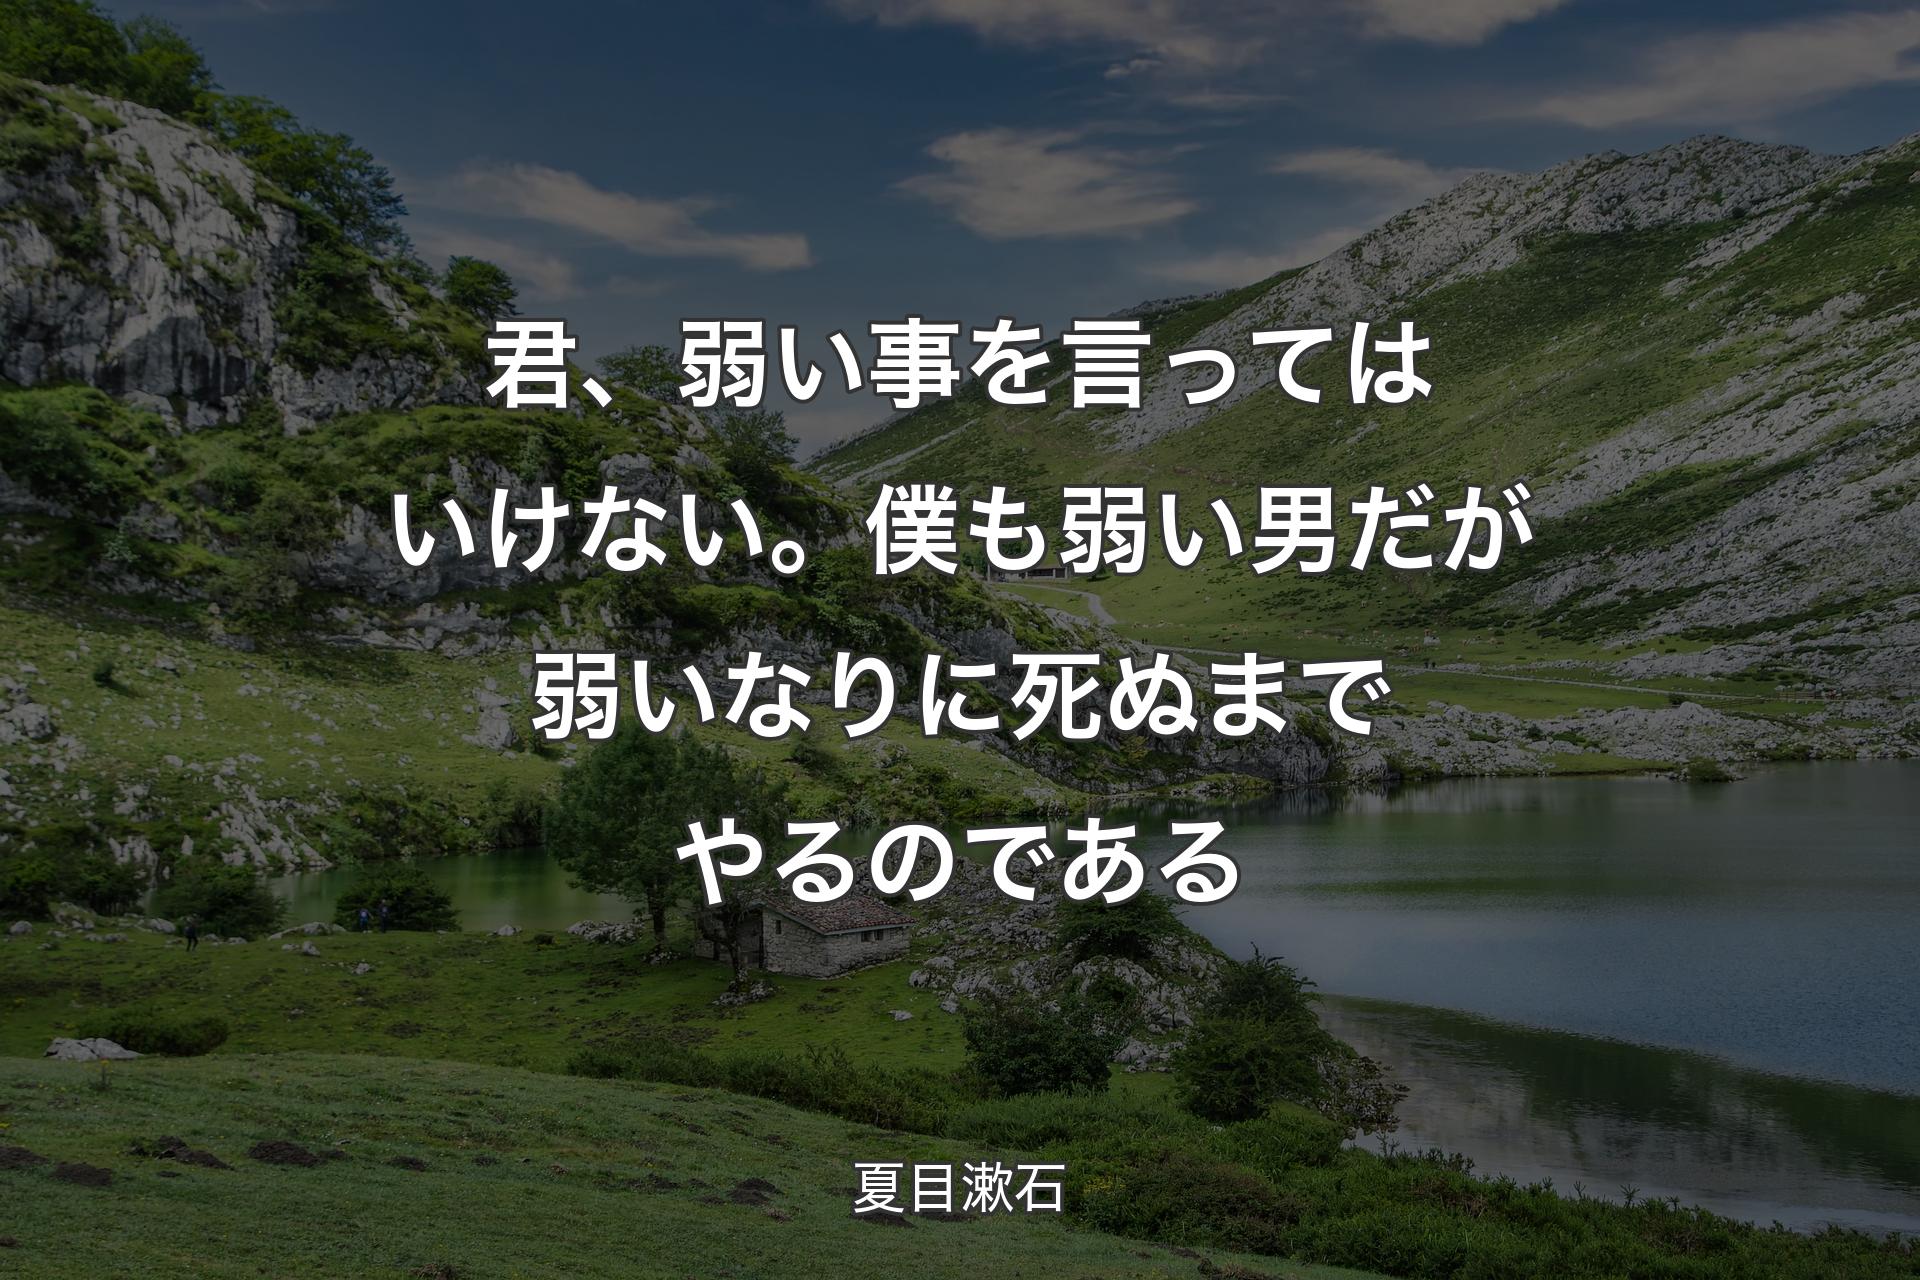 【背景1】君、弱い事を言ってはいけない。僕も弱い男だが弱いなりに死ぬまでやるのである - 夏目漱石